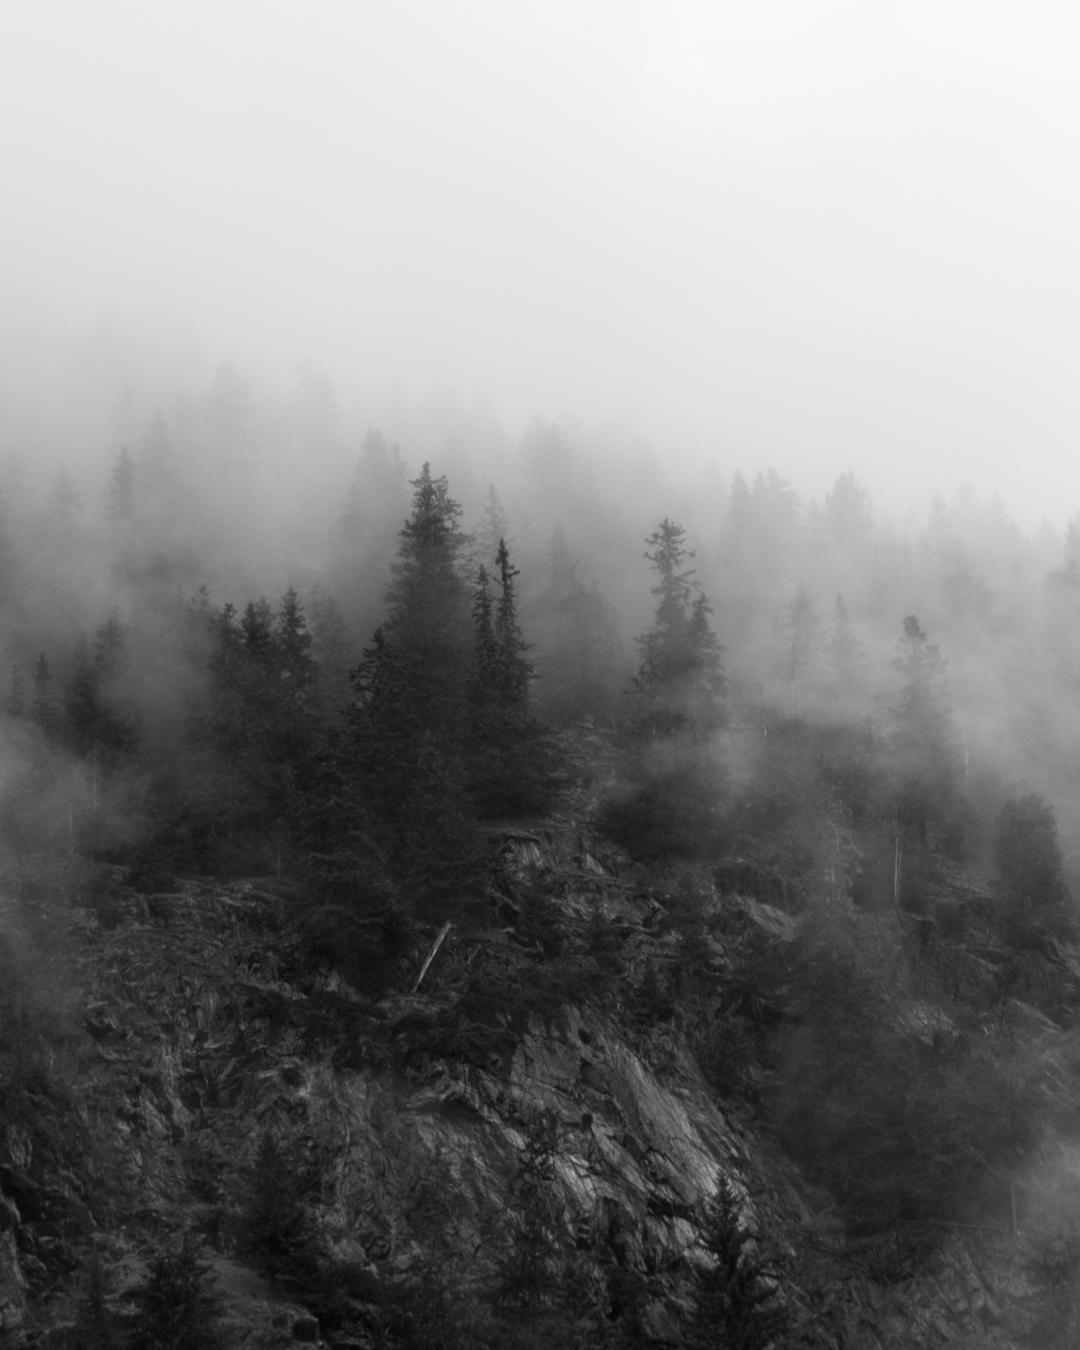 Ein paar Bäume auf einem Felsen im Nebel in Schwarz-Weiß.